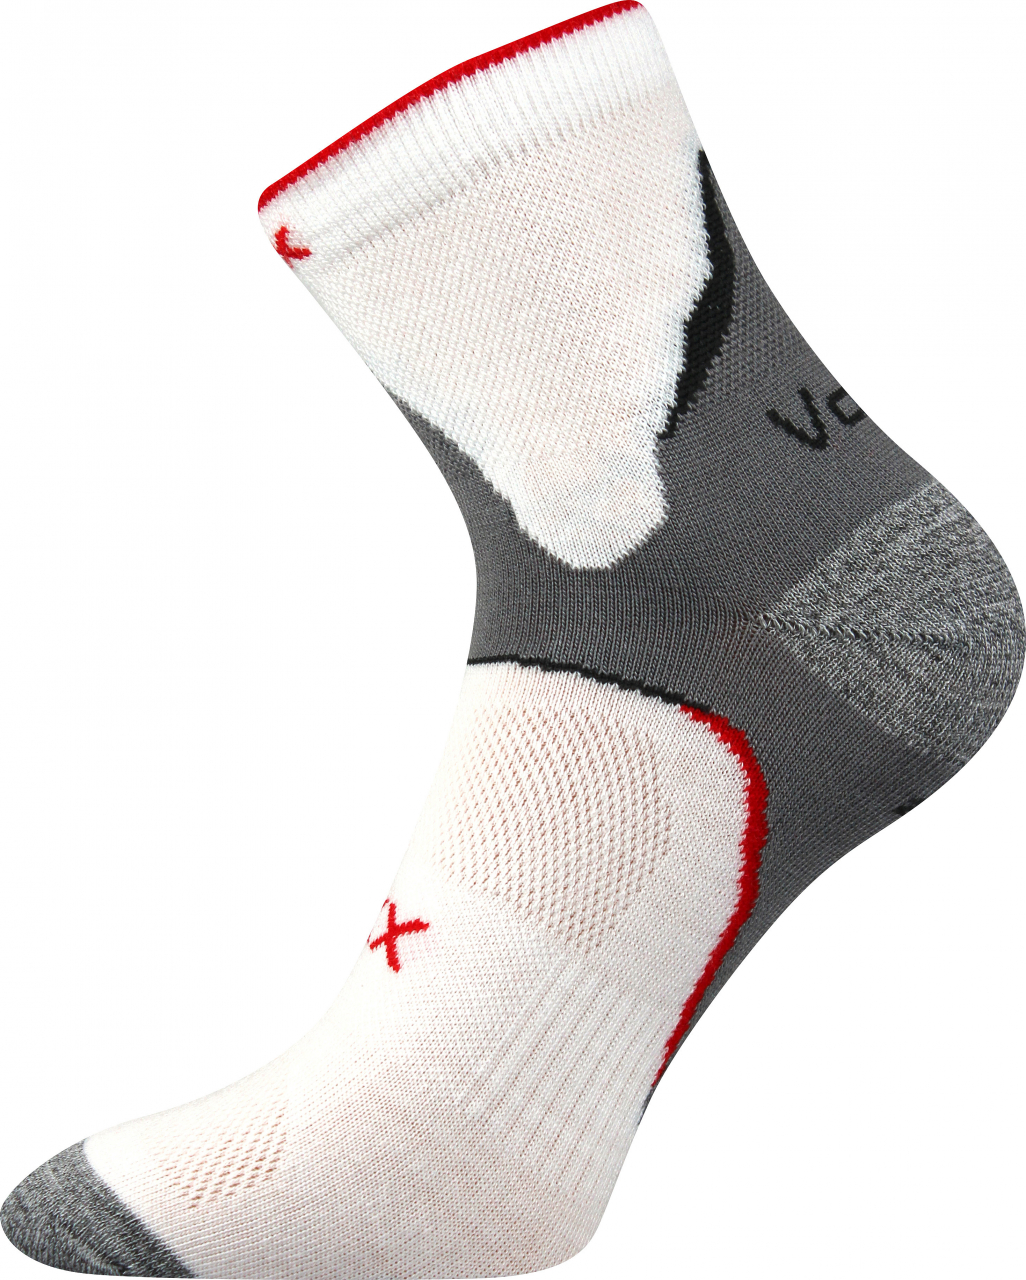 Ponožky antibakteriální Voxx Maxter silproX - bílé-šedé, 43-46